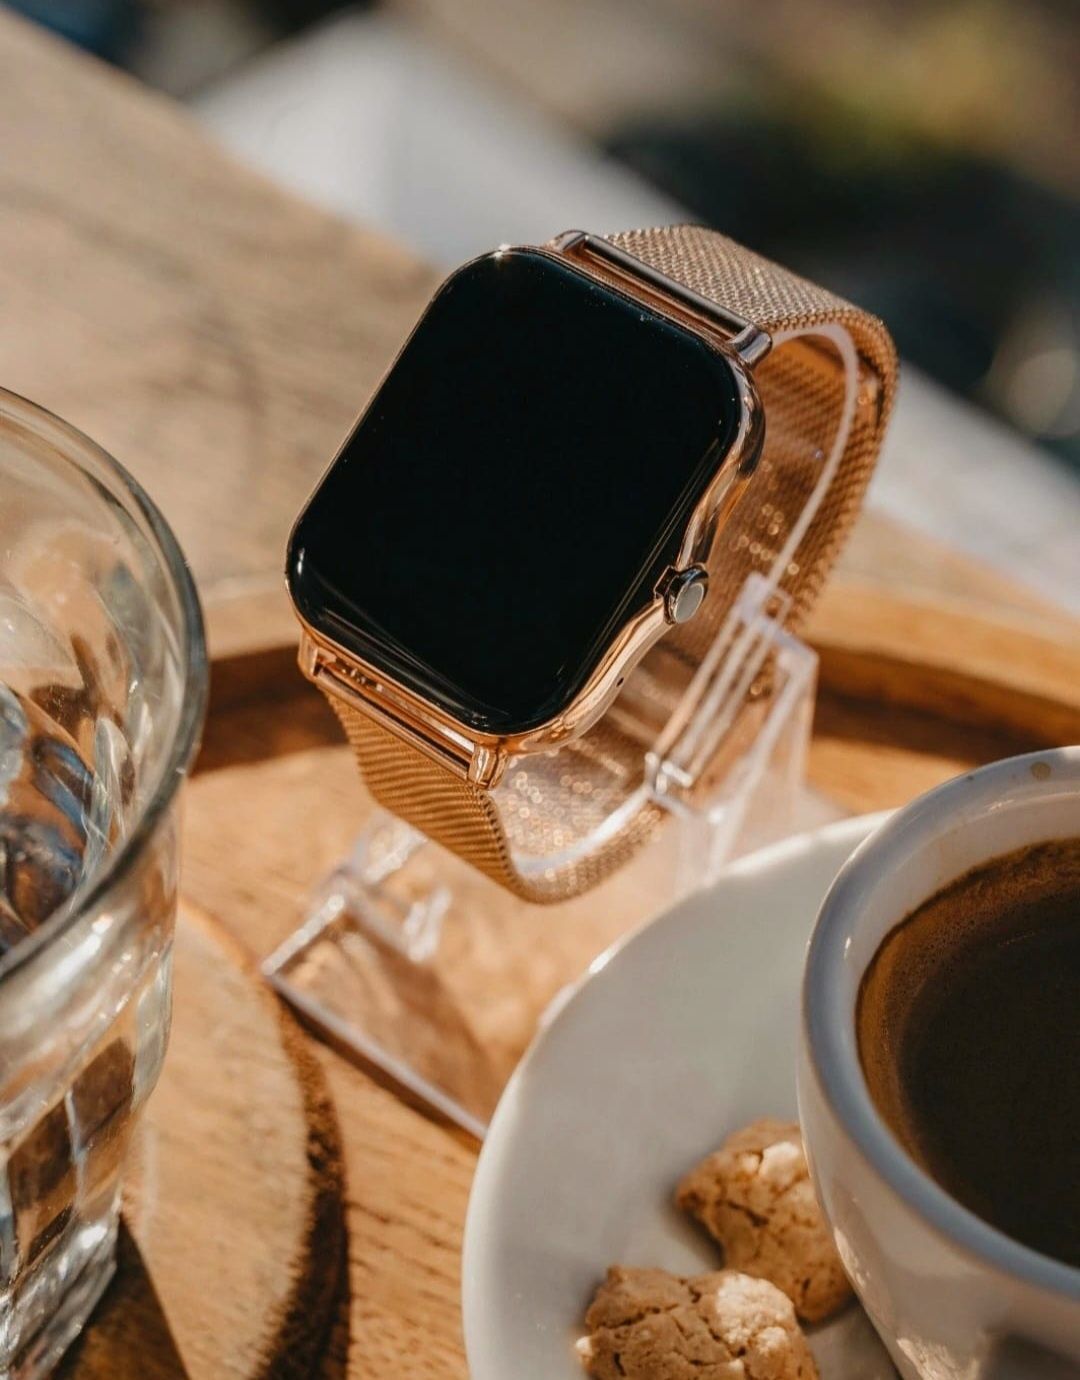 Smartwatch nowy komplet